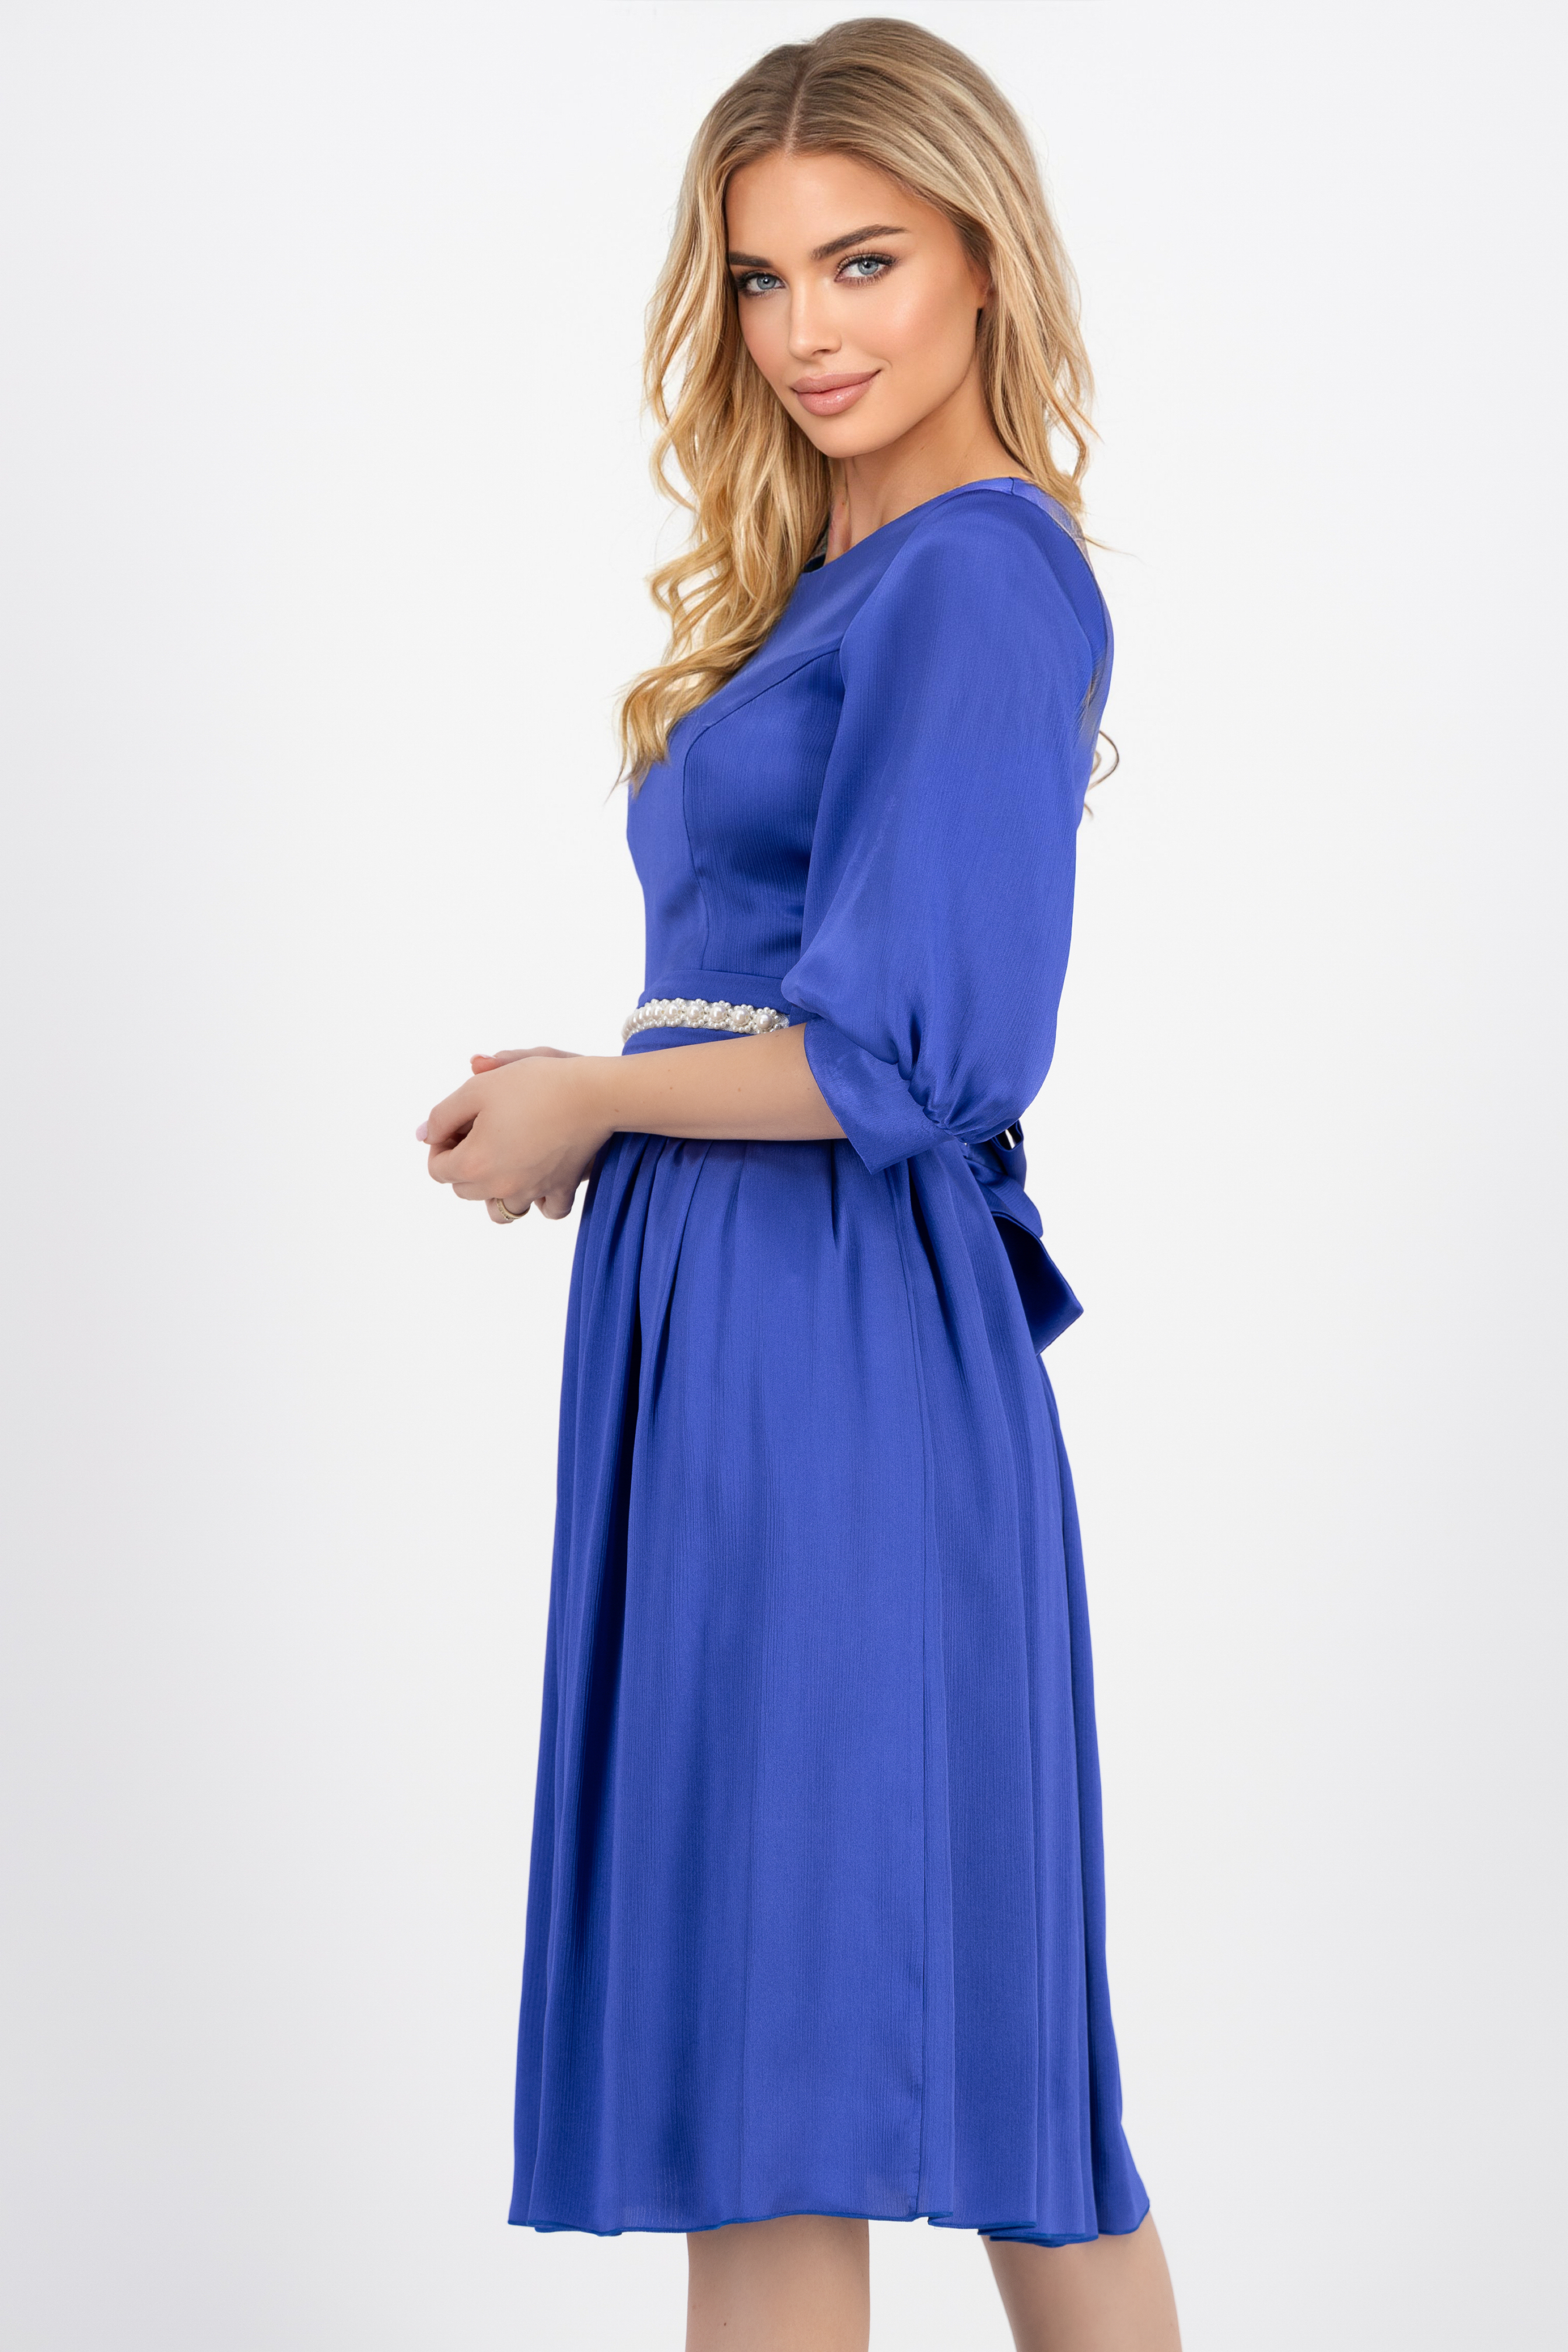 Kék vékony szatén anyagú midi harang ruha öv tipusú kiegészitővel gyöngy díszítéssel - StarShinerS 2 - StarShinerS.hu